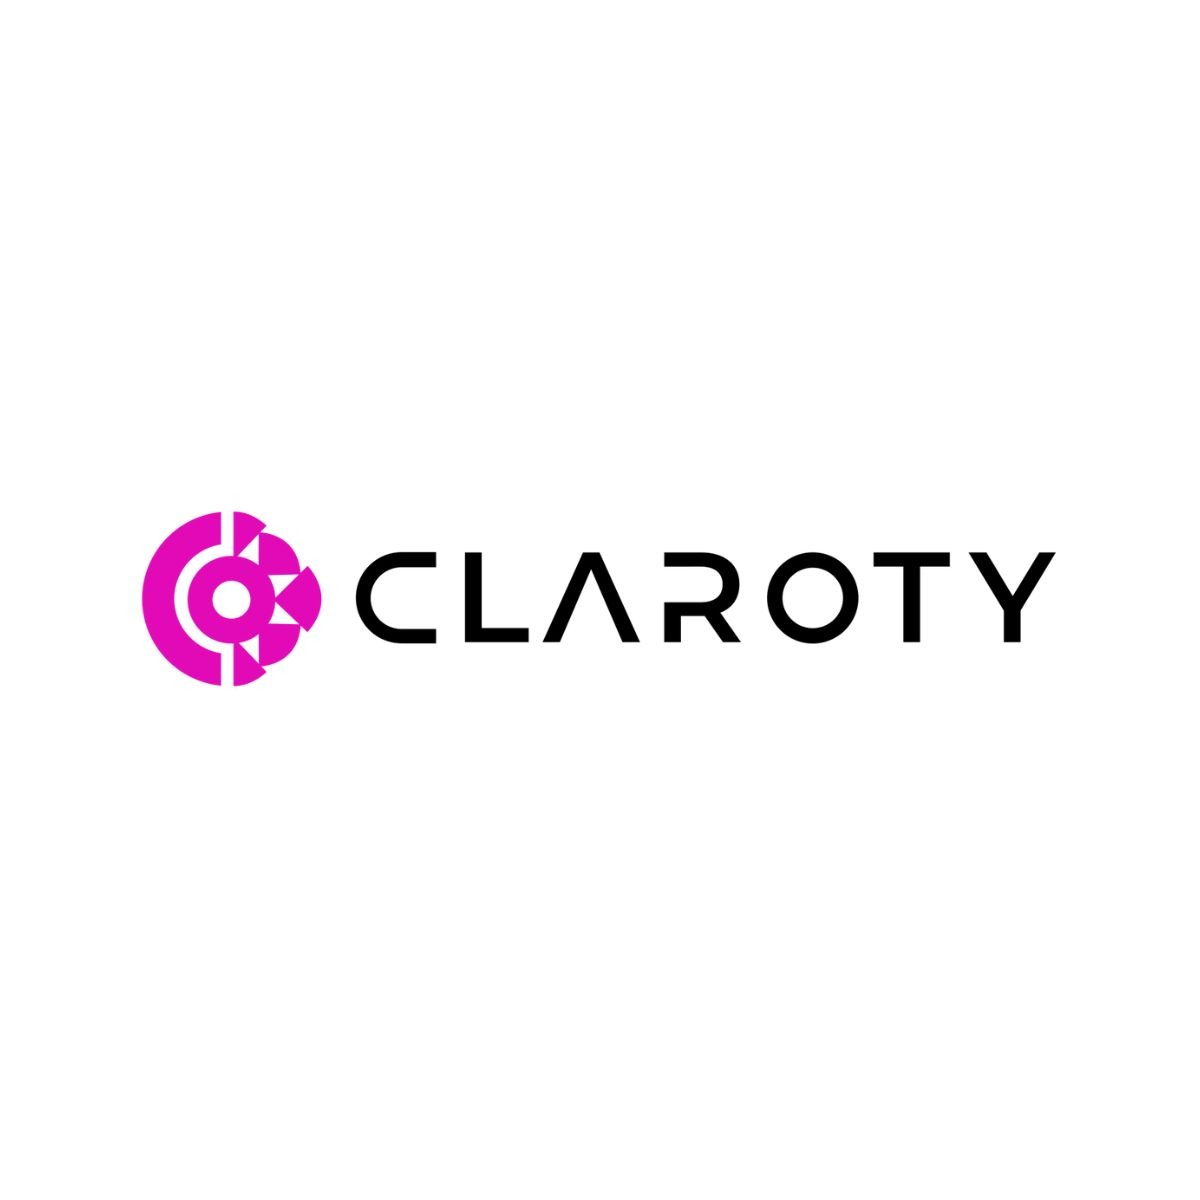 claroty_logo